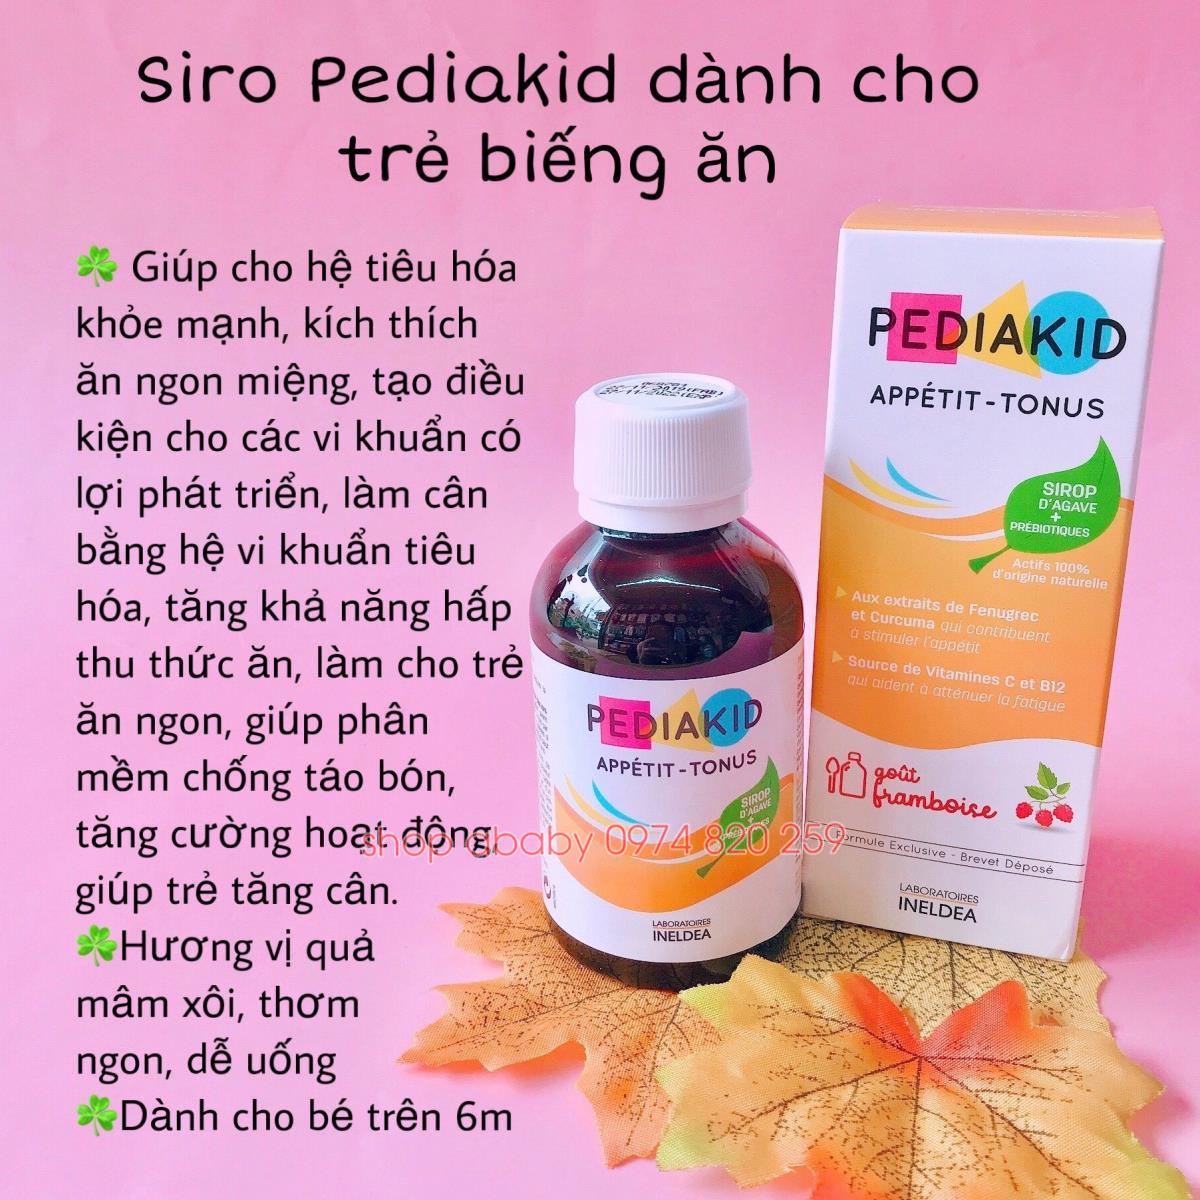 Siro PediaKid Appetit Tonus dành cho trẻ biếng ăn 125ml (Từ 6 Tháng Tuổi)